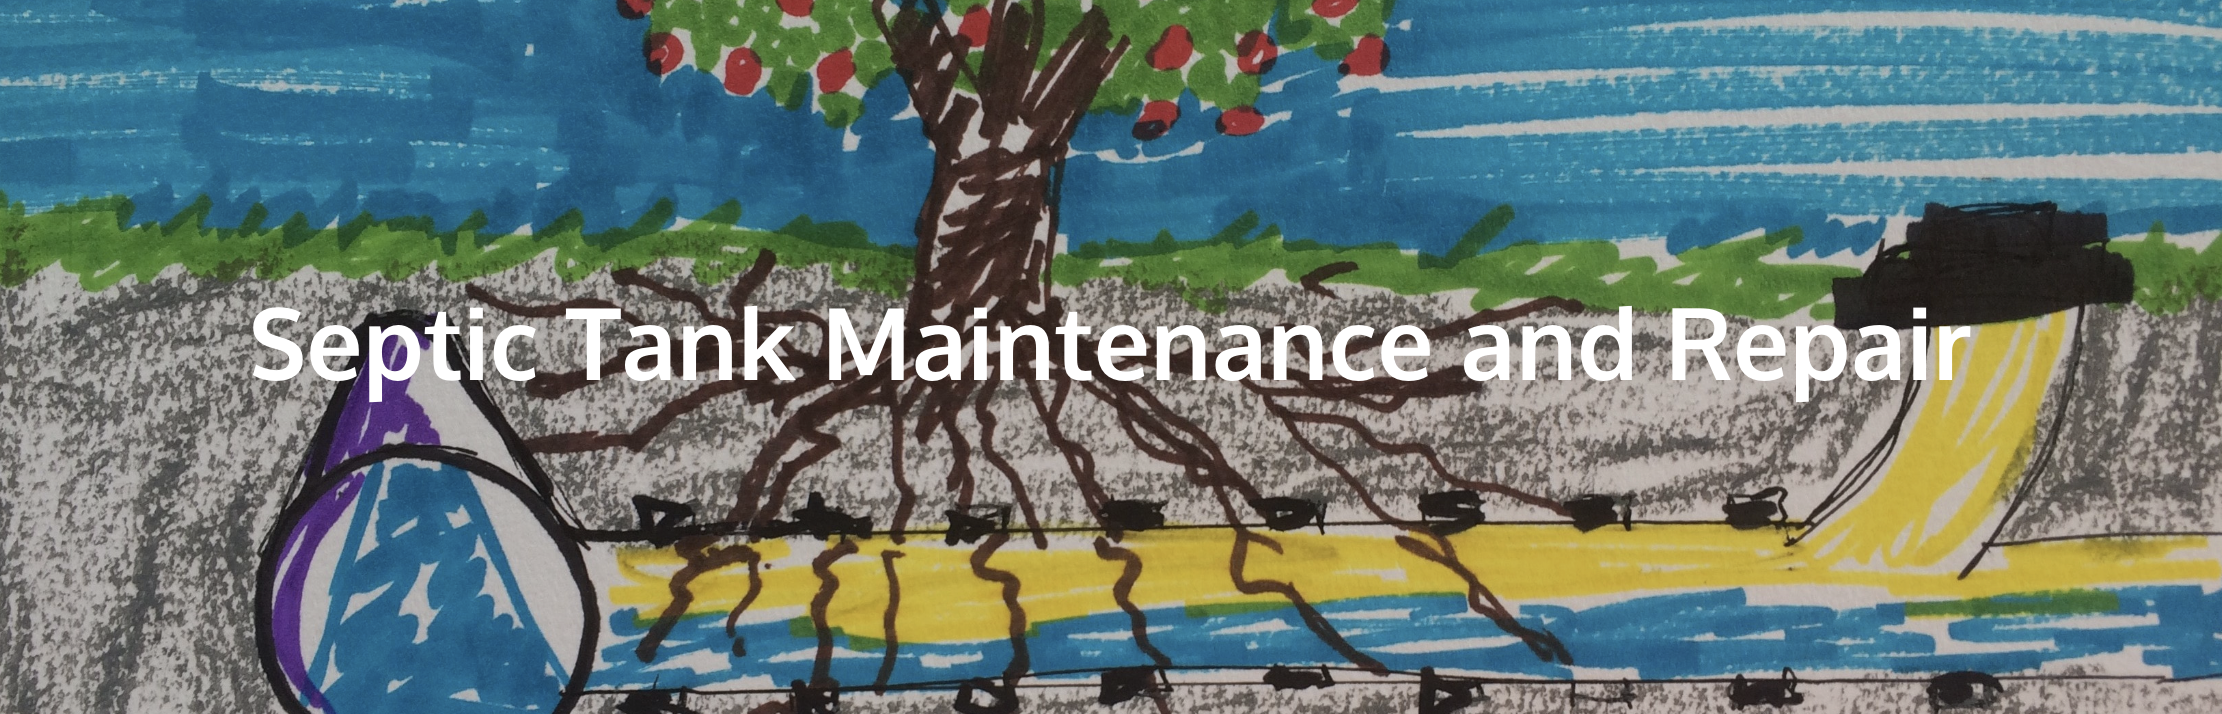 Septic Tank Maintenance and Repair